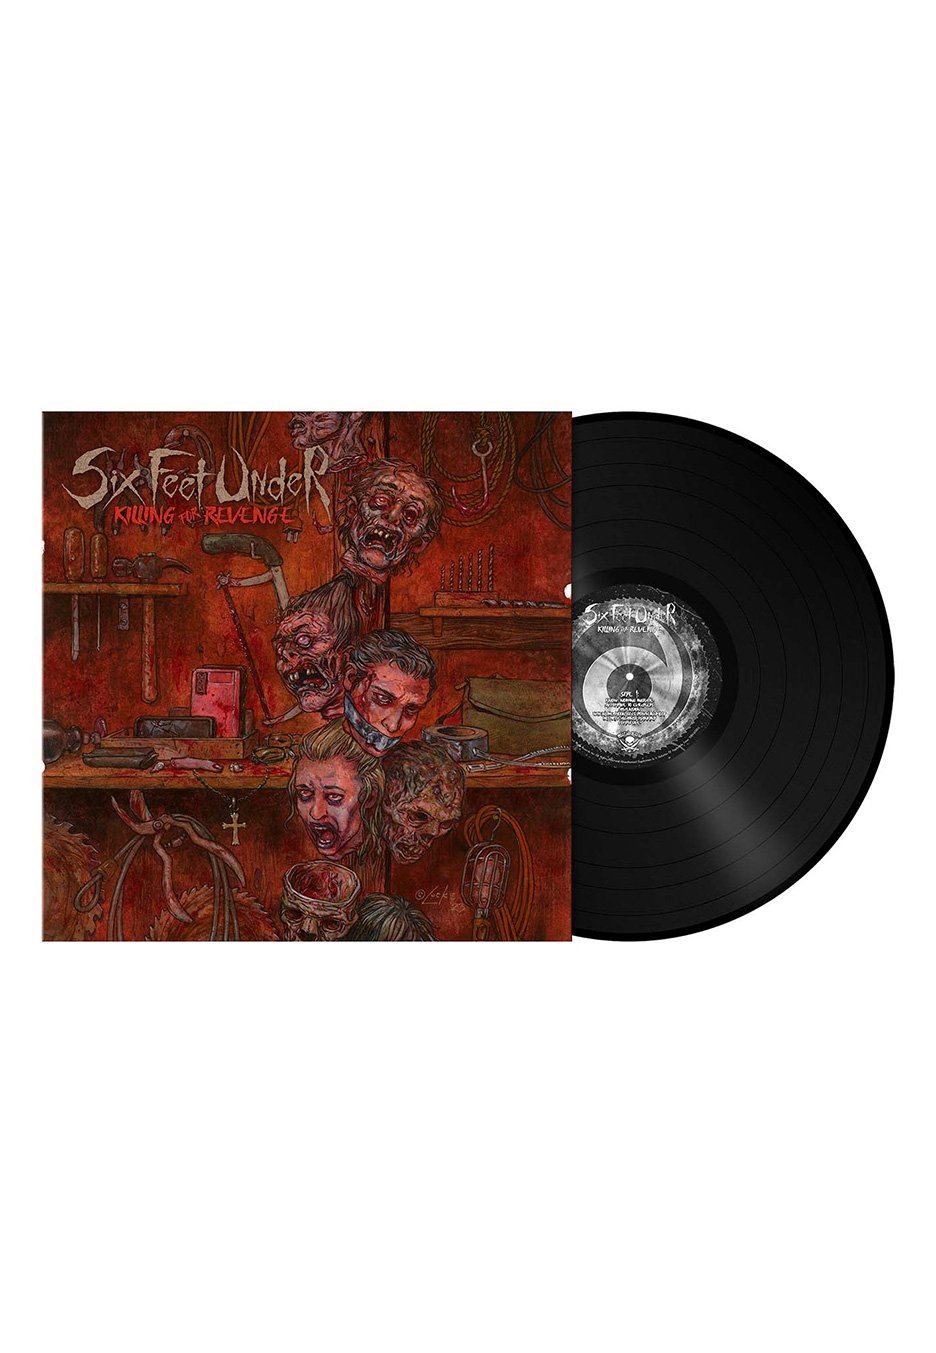 Six Feet Under - Killing For Revenge - Vinyl